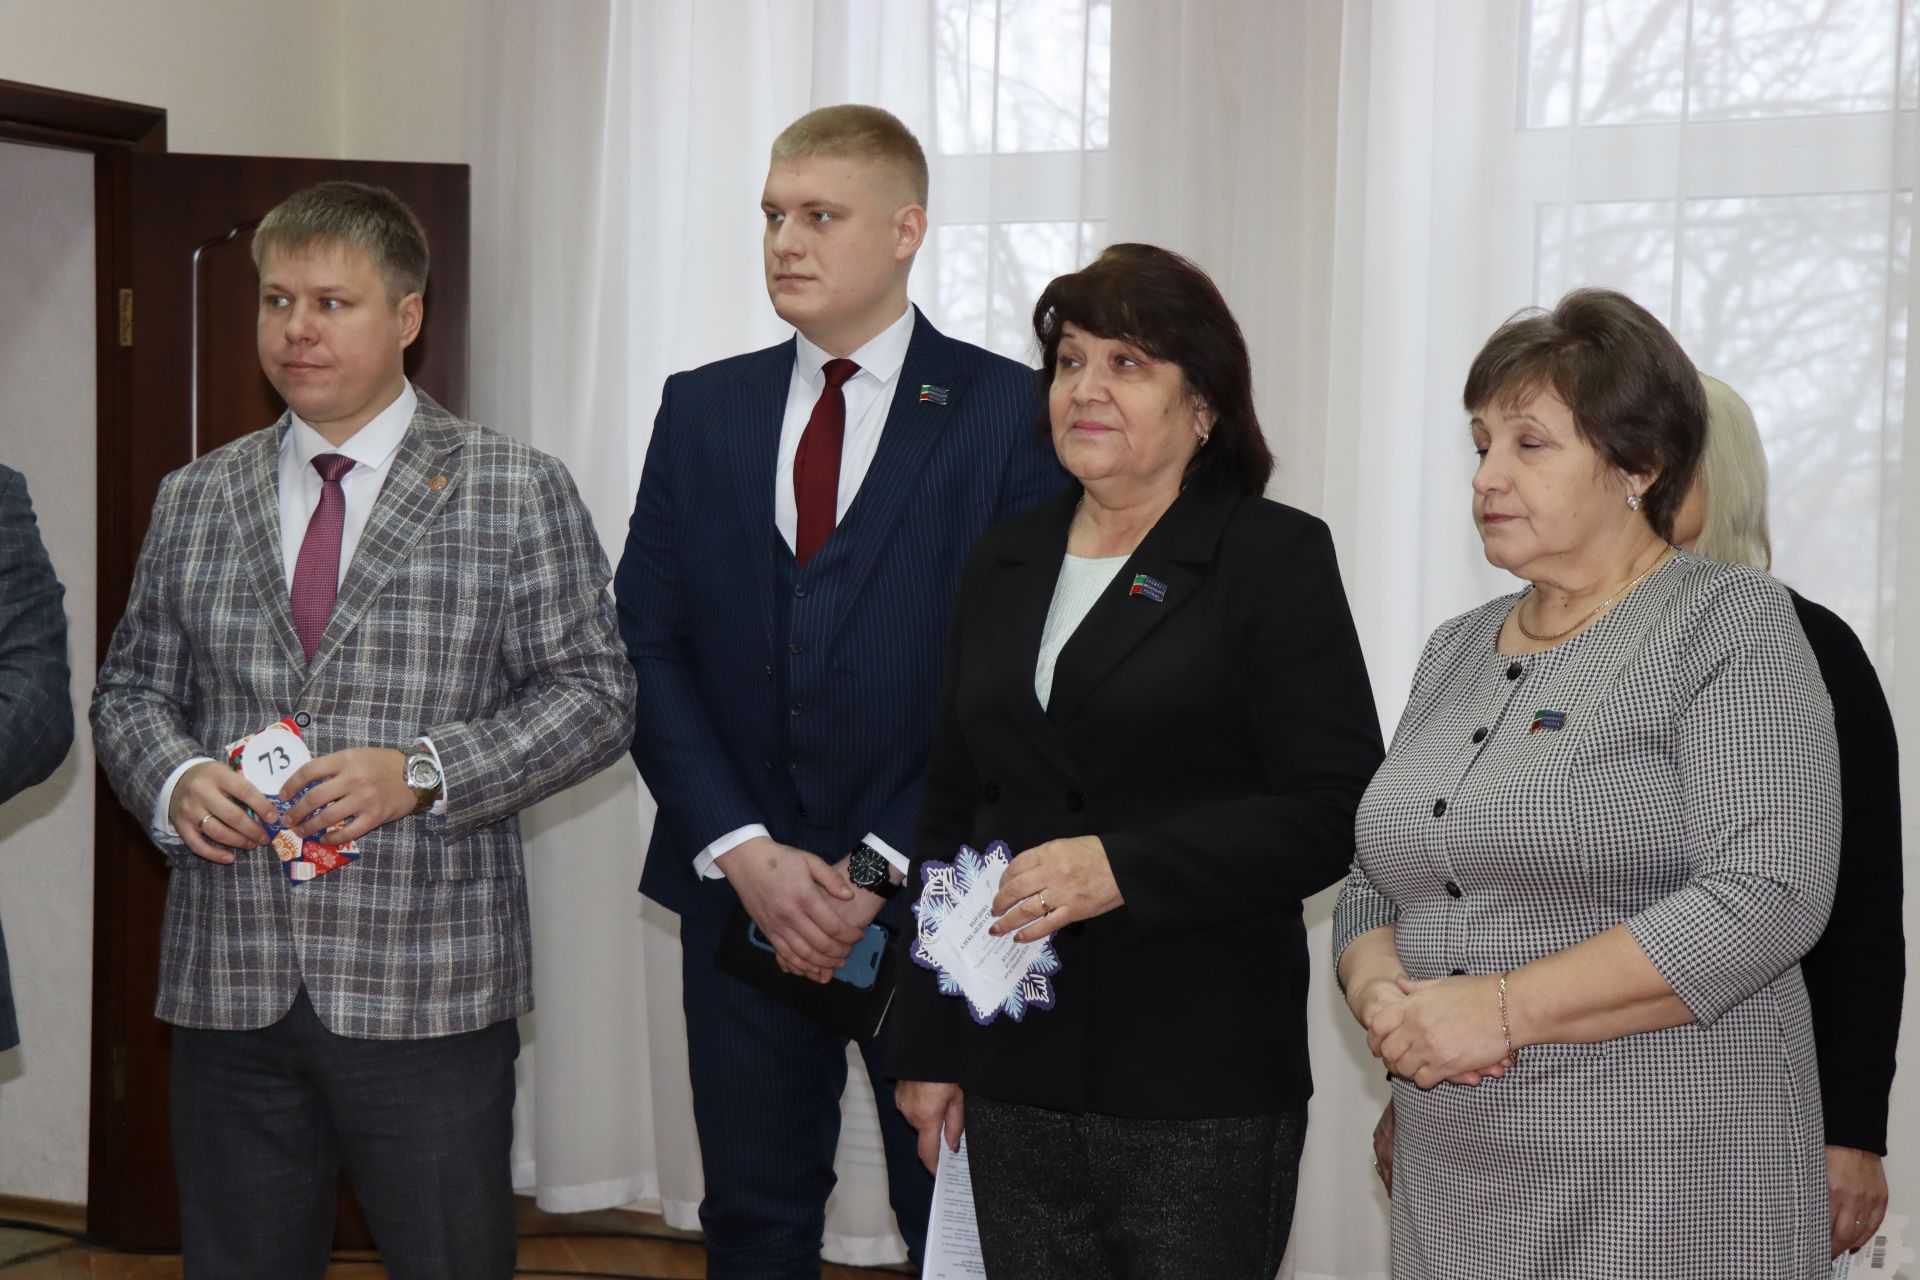 Старт Всероссийской благотворительной акции «Елка желаний» в Нурлате традиционно дал глава района Алмаз Ахметшин